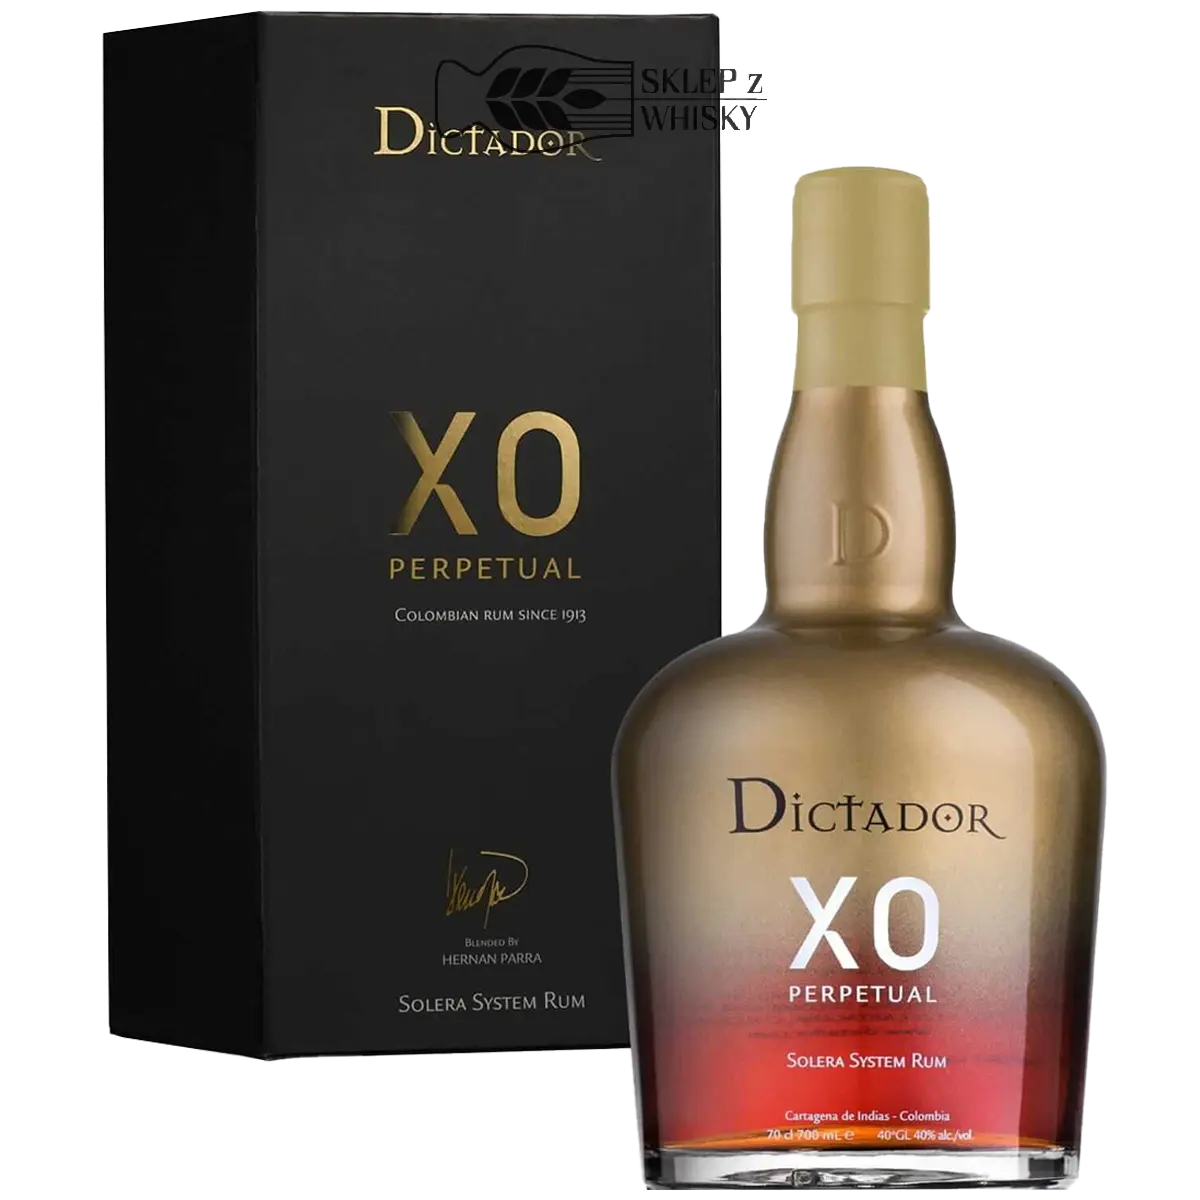 Dictador XO Perpetual - rum kolumbijski, 700 ml, w pudełku